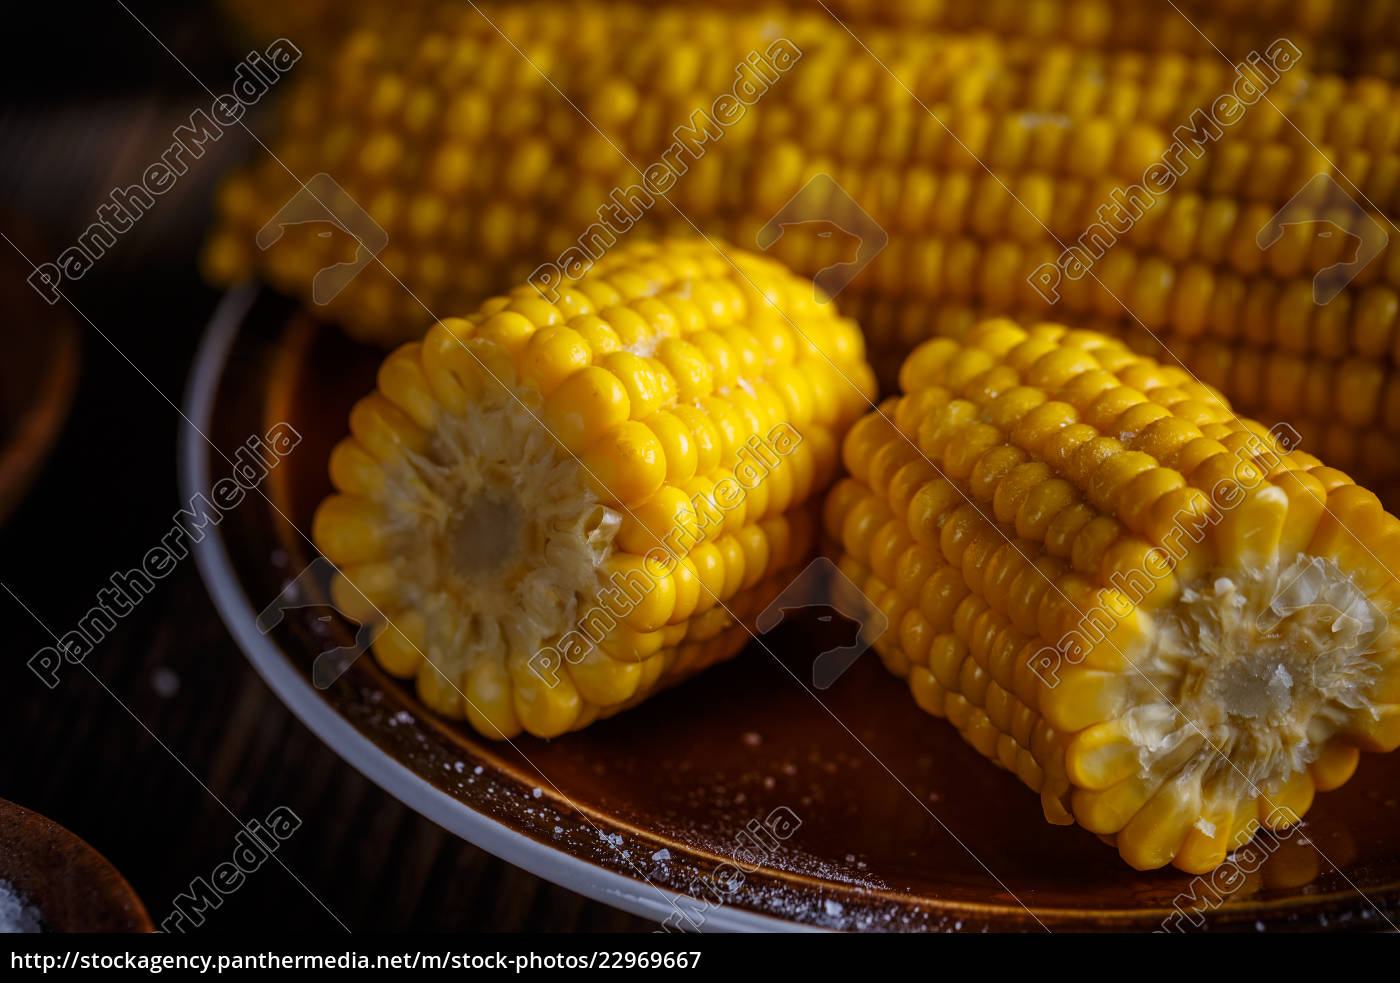 süßer gekochter mais - Lizenzfreies Bild - #22969667 | Bildagentur ...